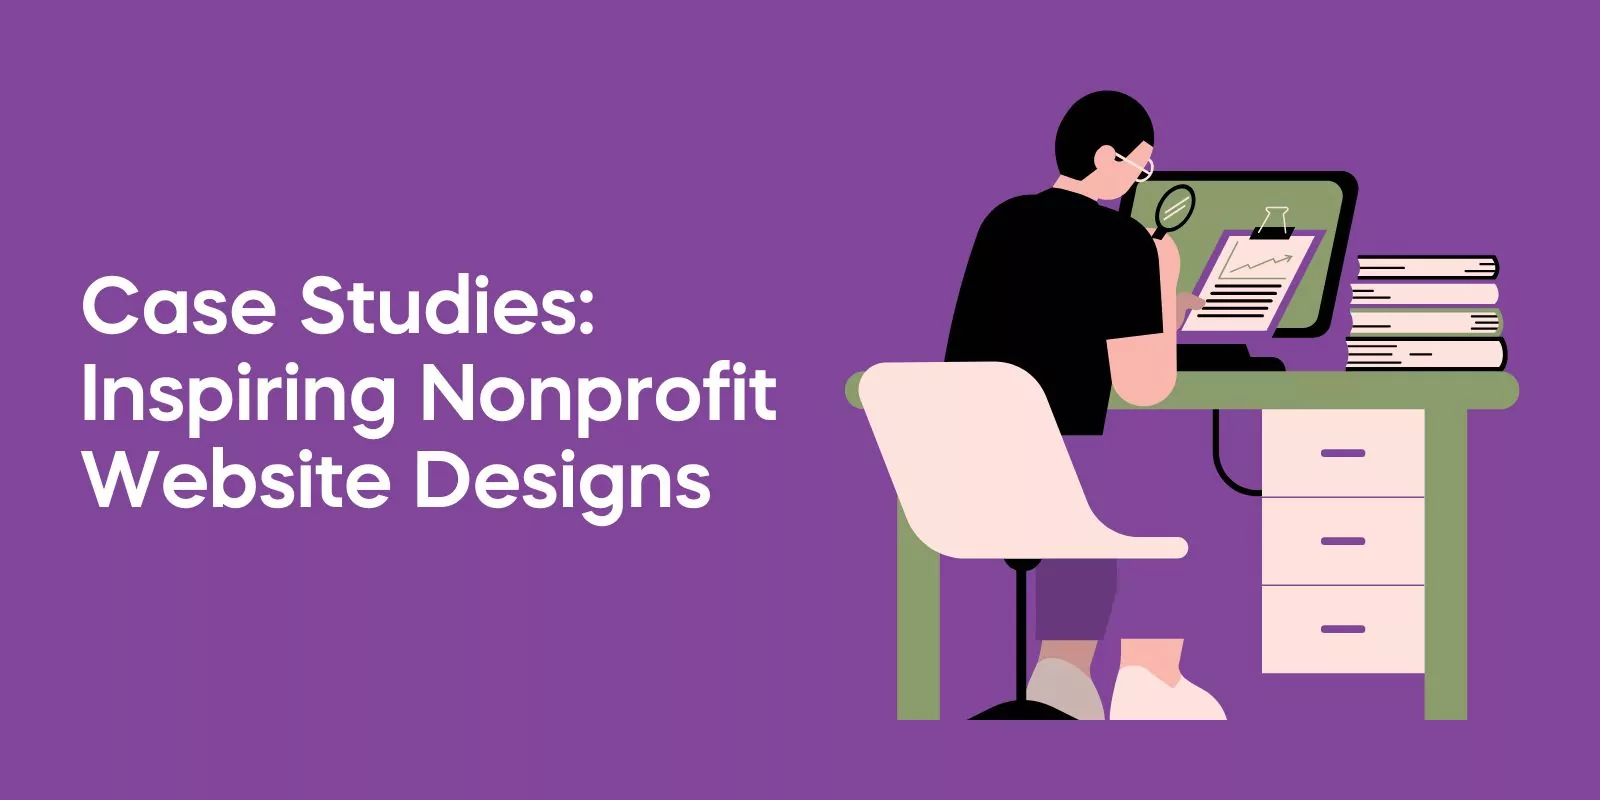 Case Studies: Inspiring Nonprofit Website Designs